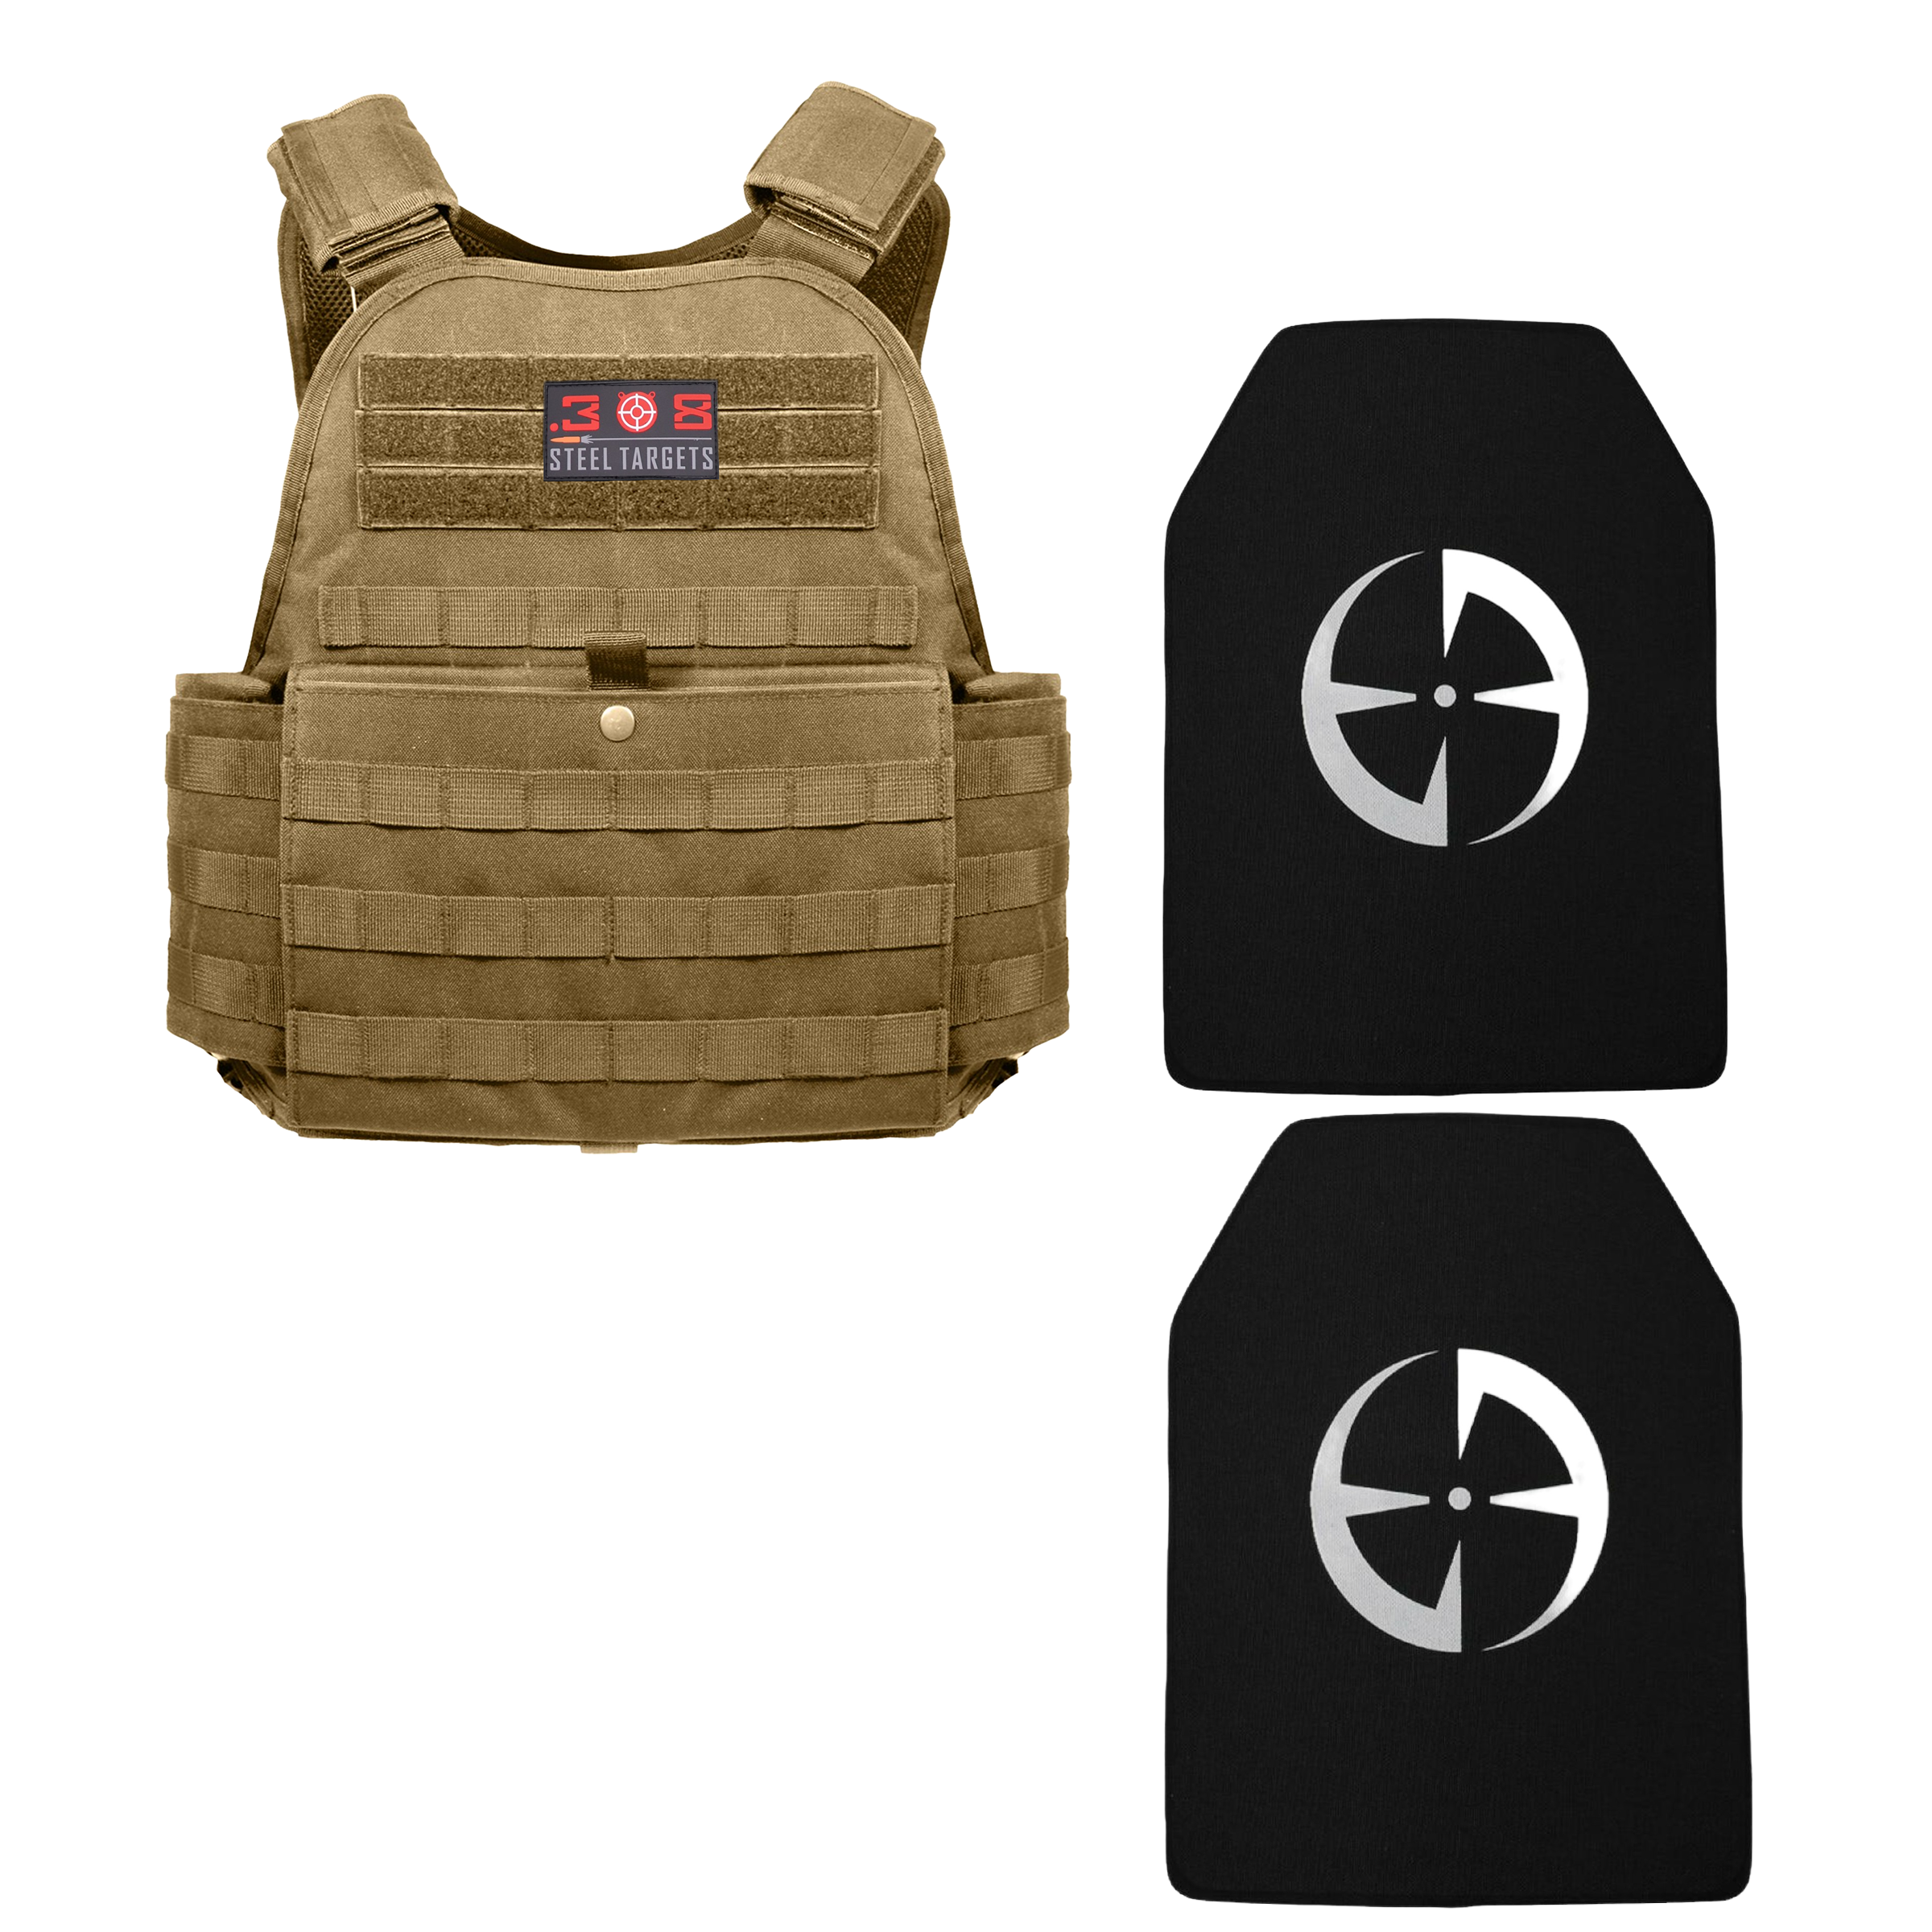 2XL-3XL MOLLE Plate Carrier Vest